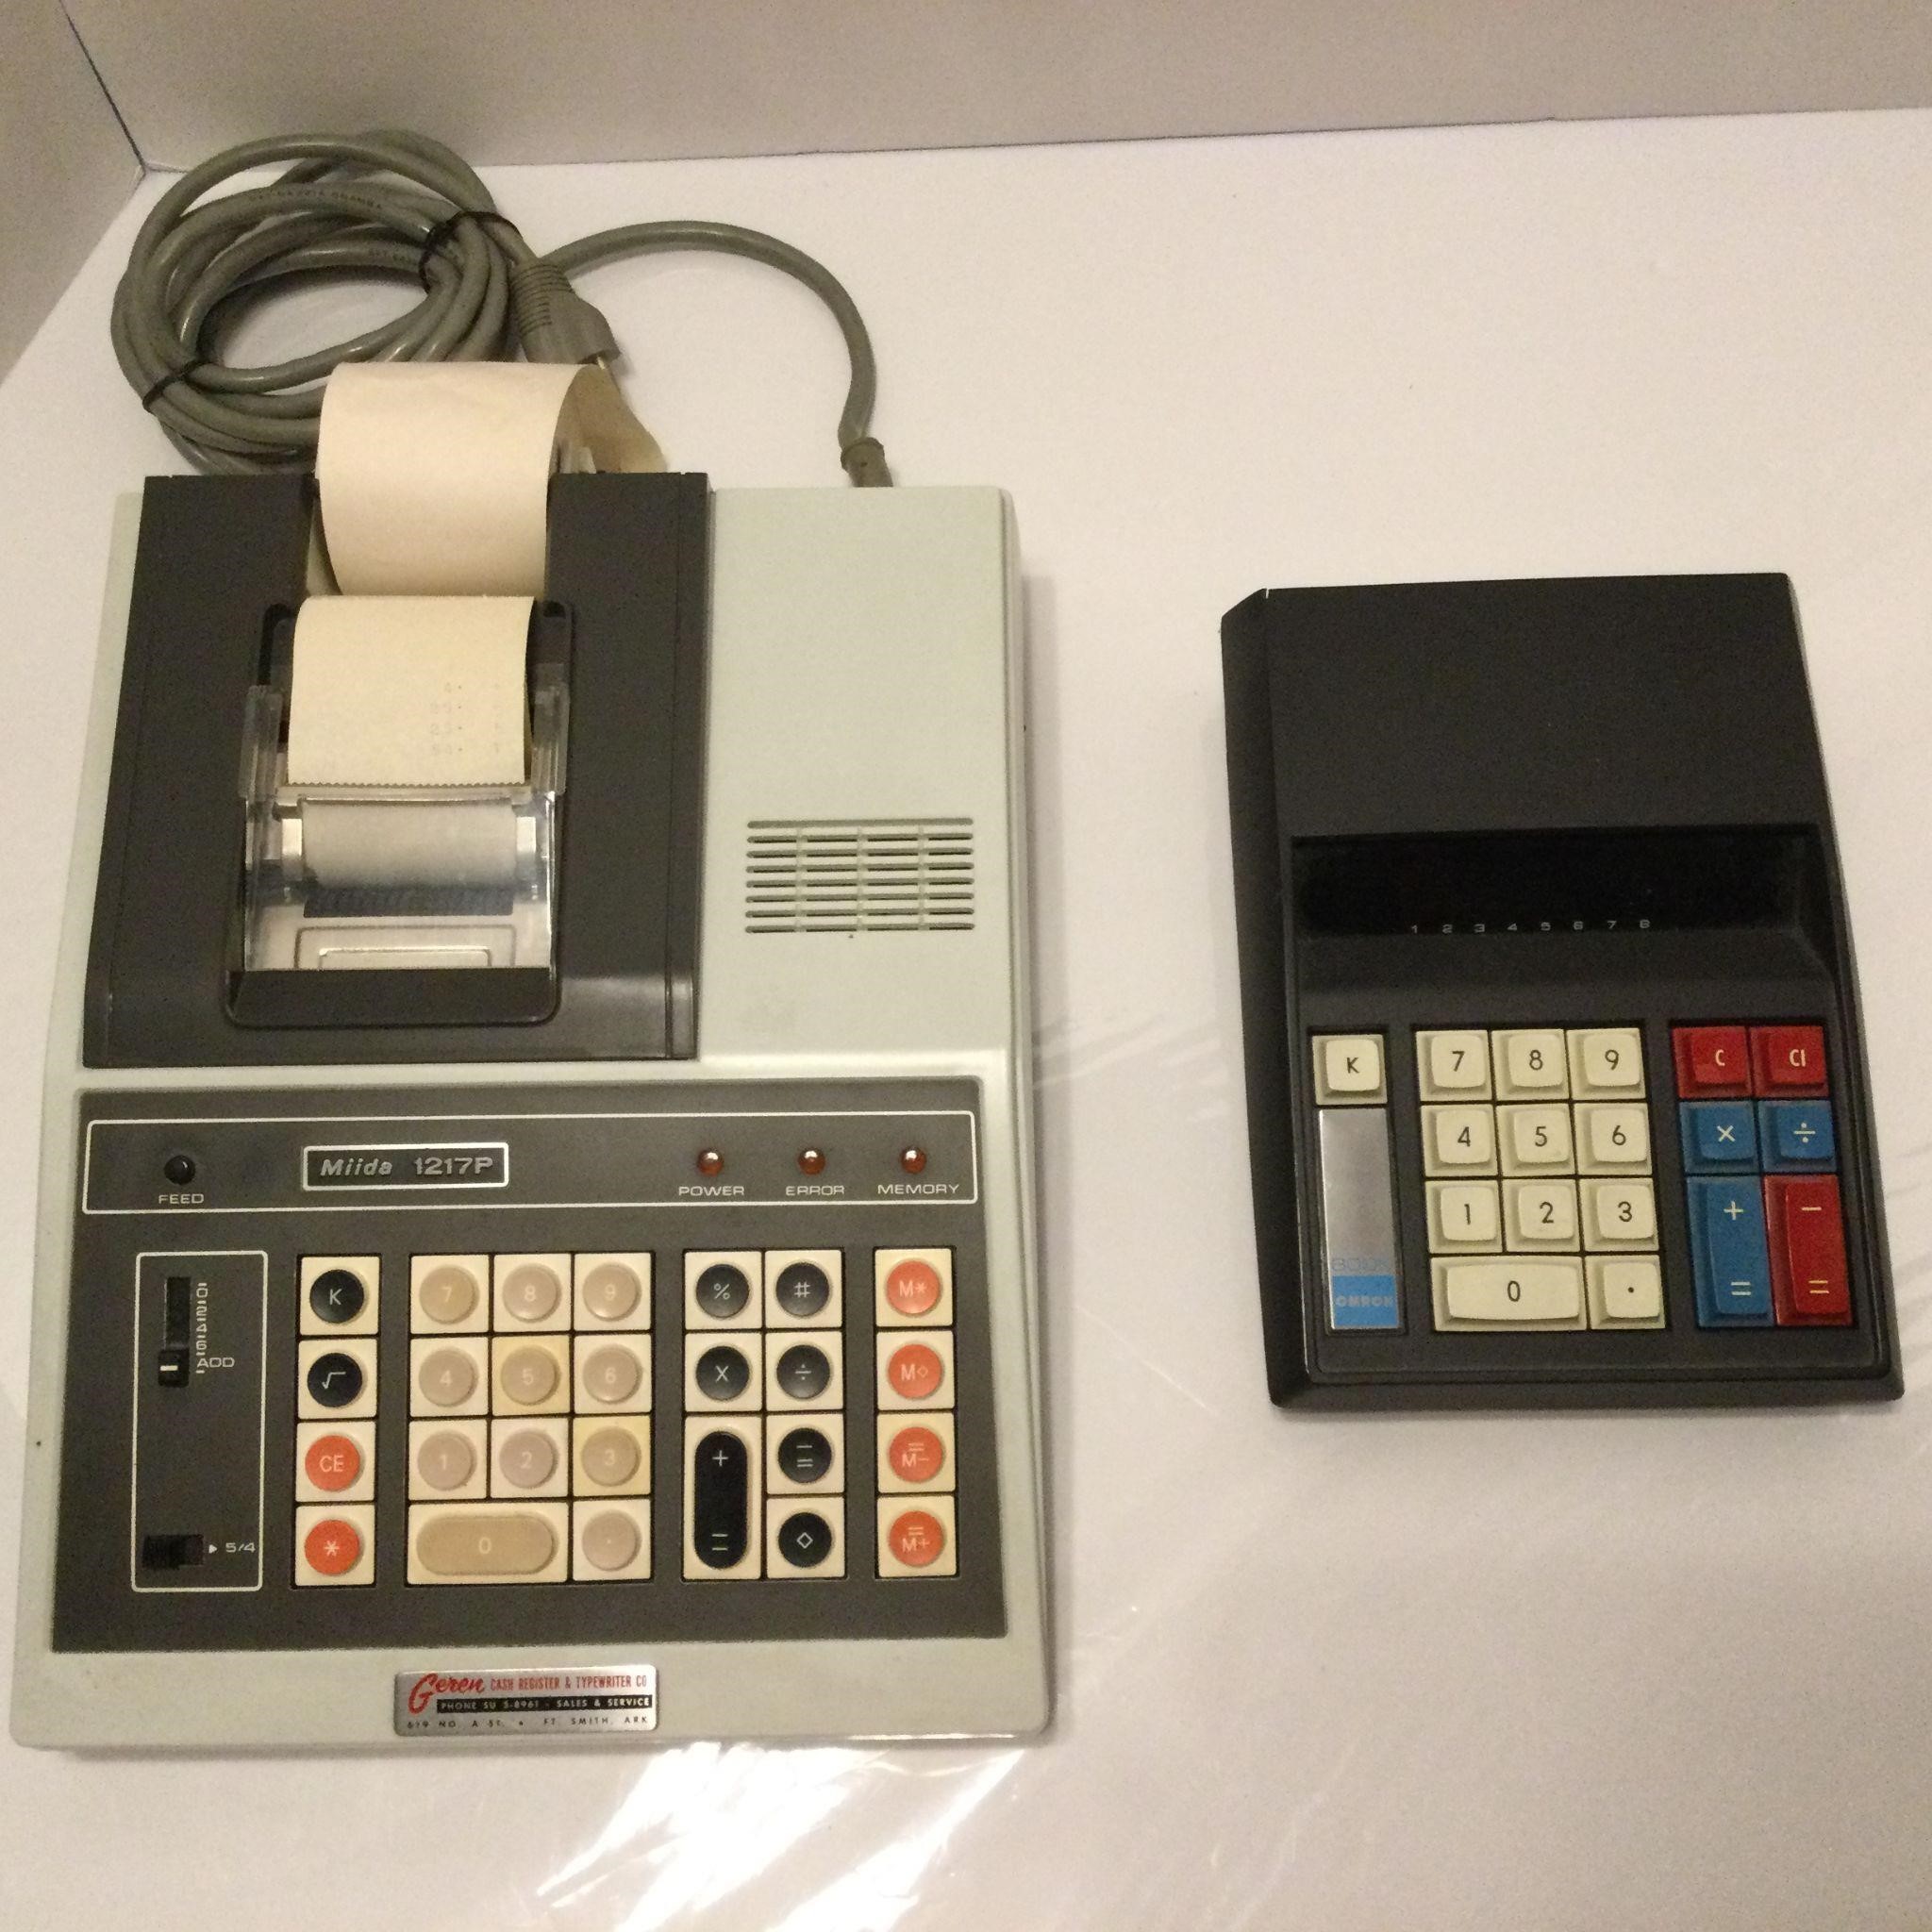 2-Calculators Rare Miida 1217P & Omron 800K